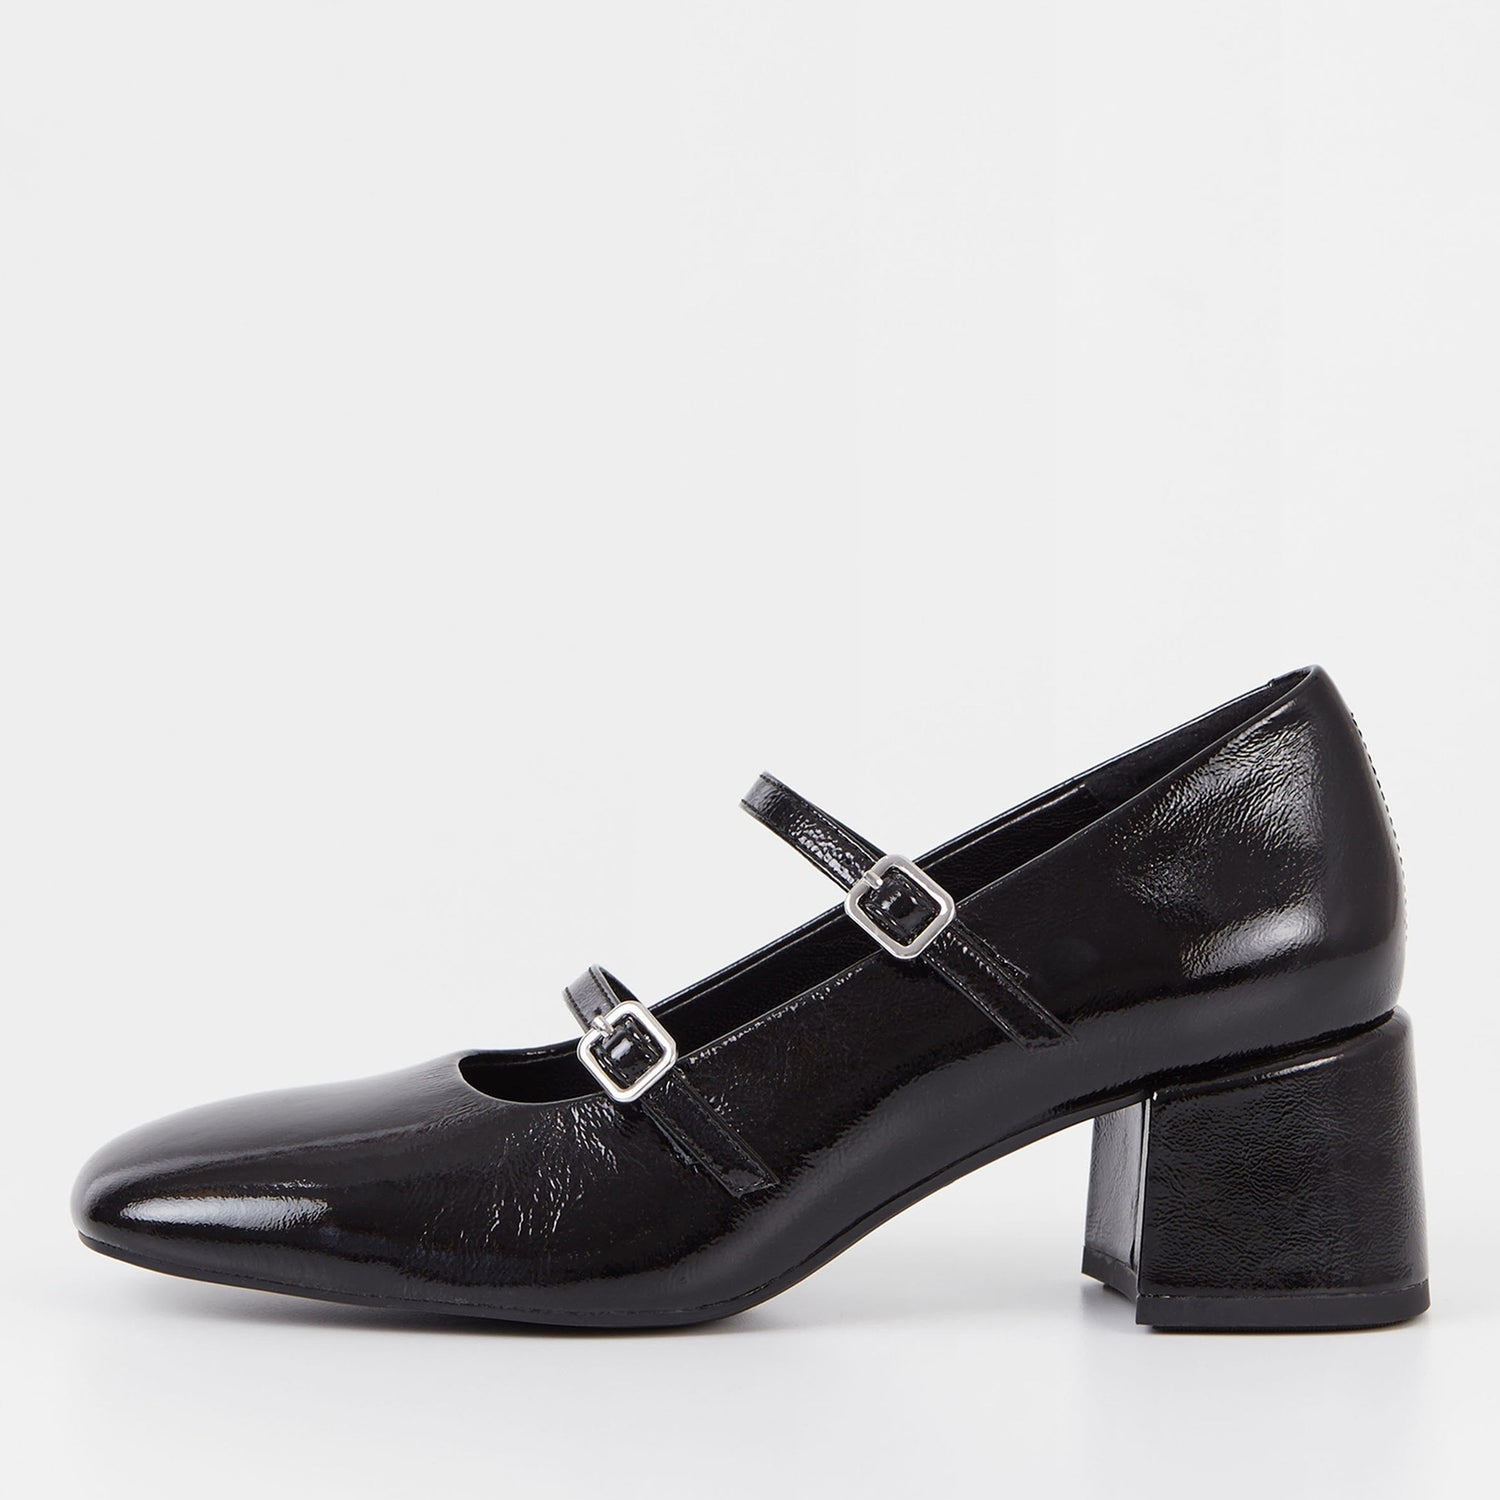 Vagabond Women's Adison Patent-Leather Heeled Mary Jane Shoes - UK 4